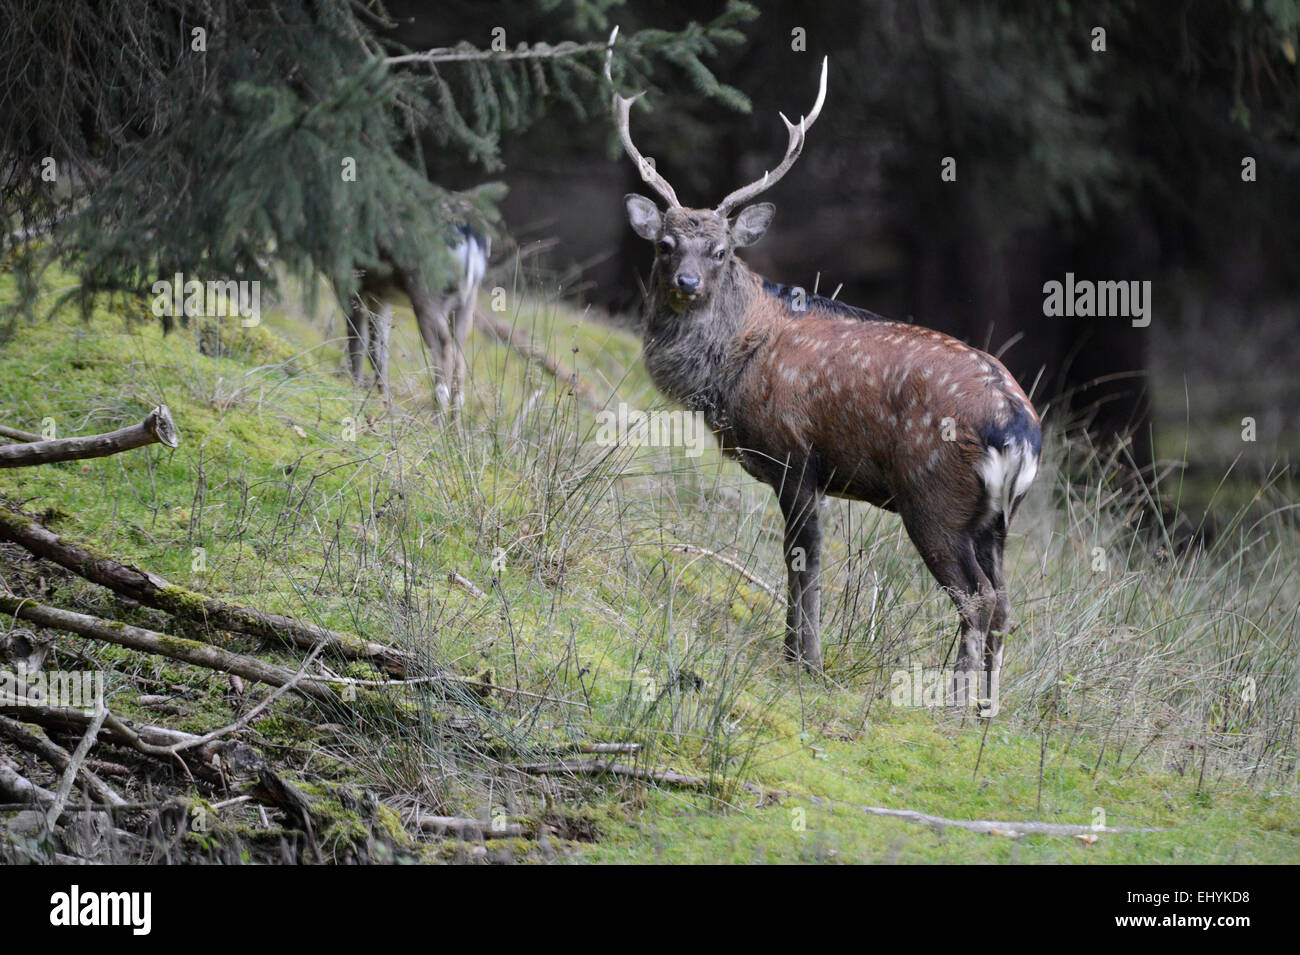 Japanese deer, animal, deer, Sika, Cervus nippon, Asian deer, Spotted deer, Asian deer, Germany Stock Photo